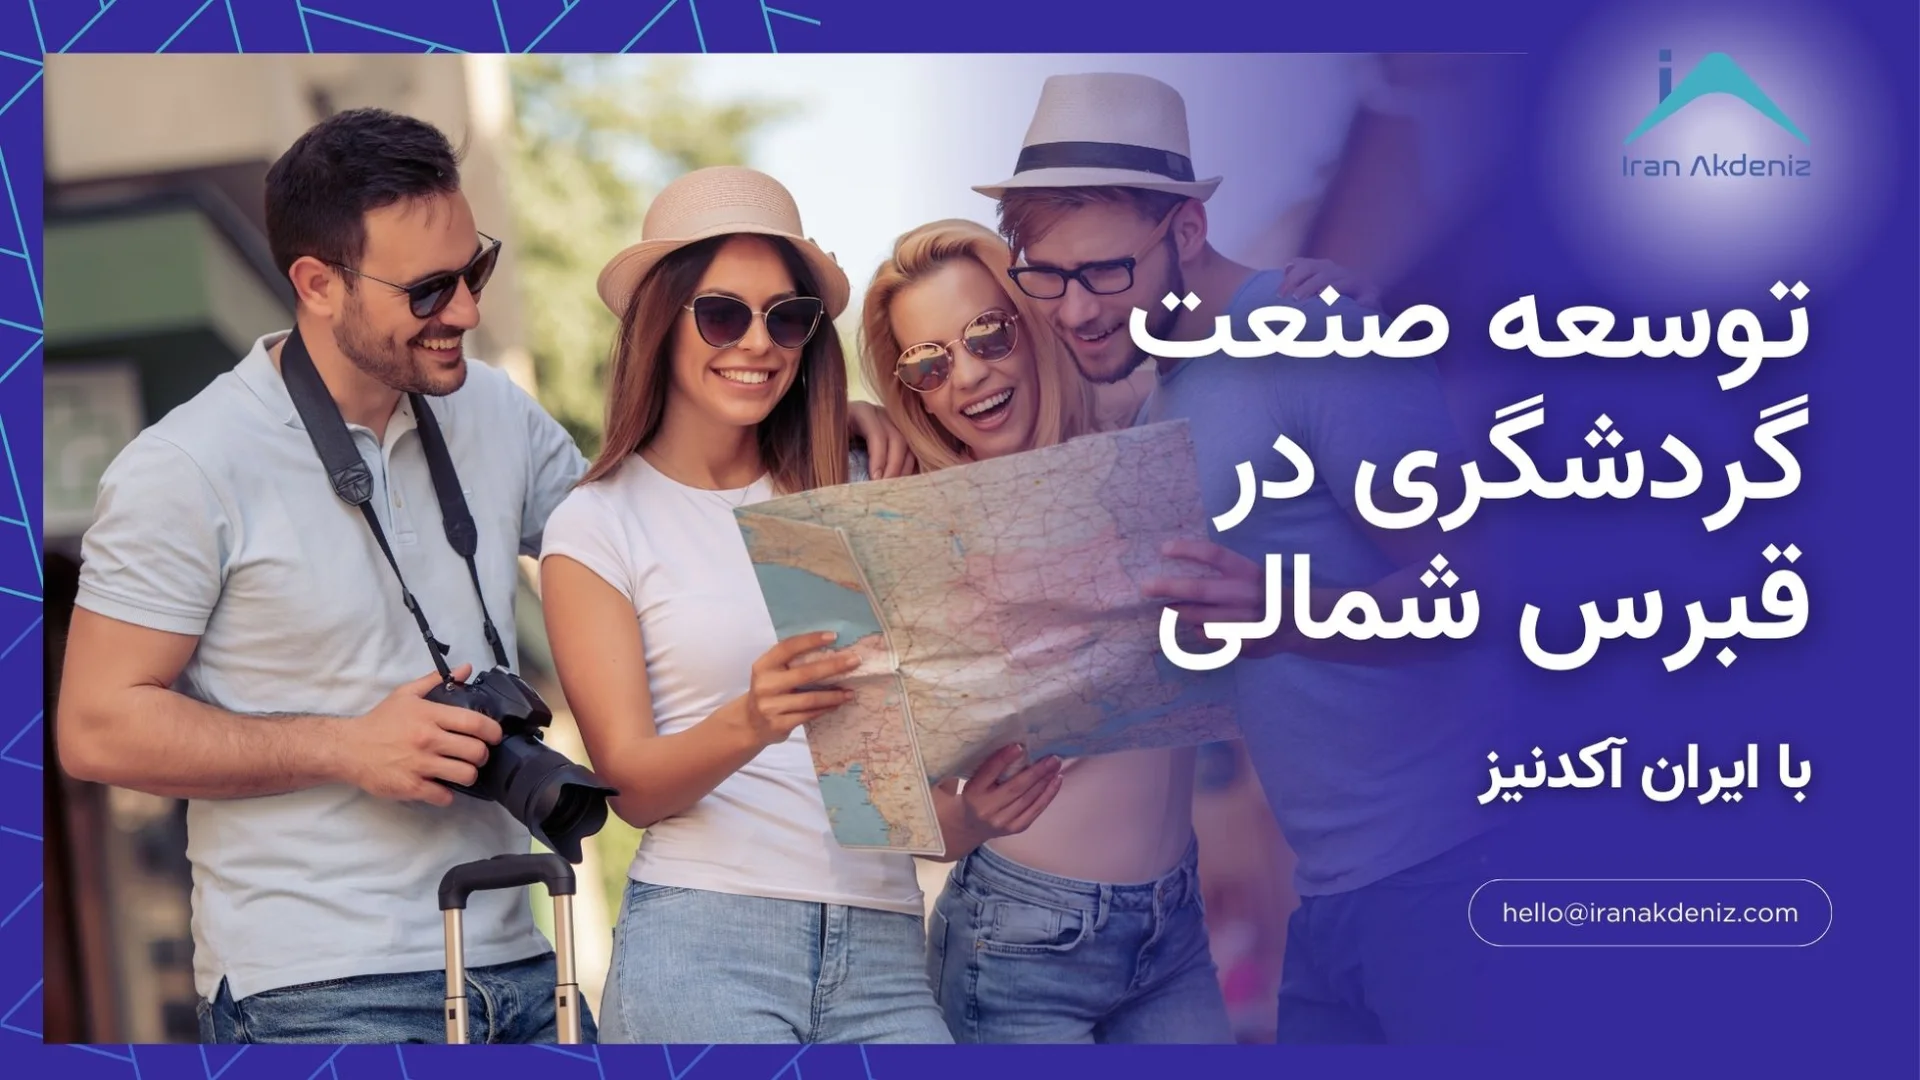 توسعه صنعت گردشگری در قبرس شمالی با بررسی آماری ایران آکدنیز